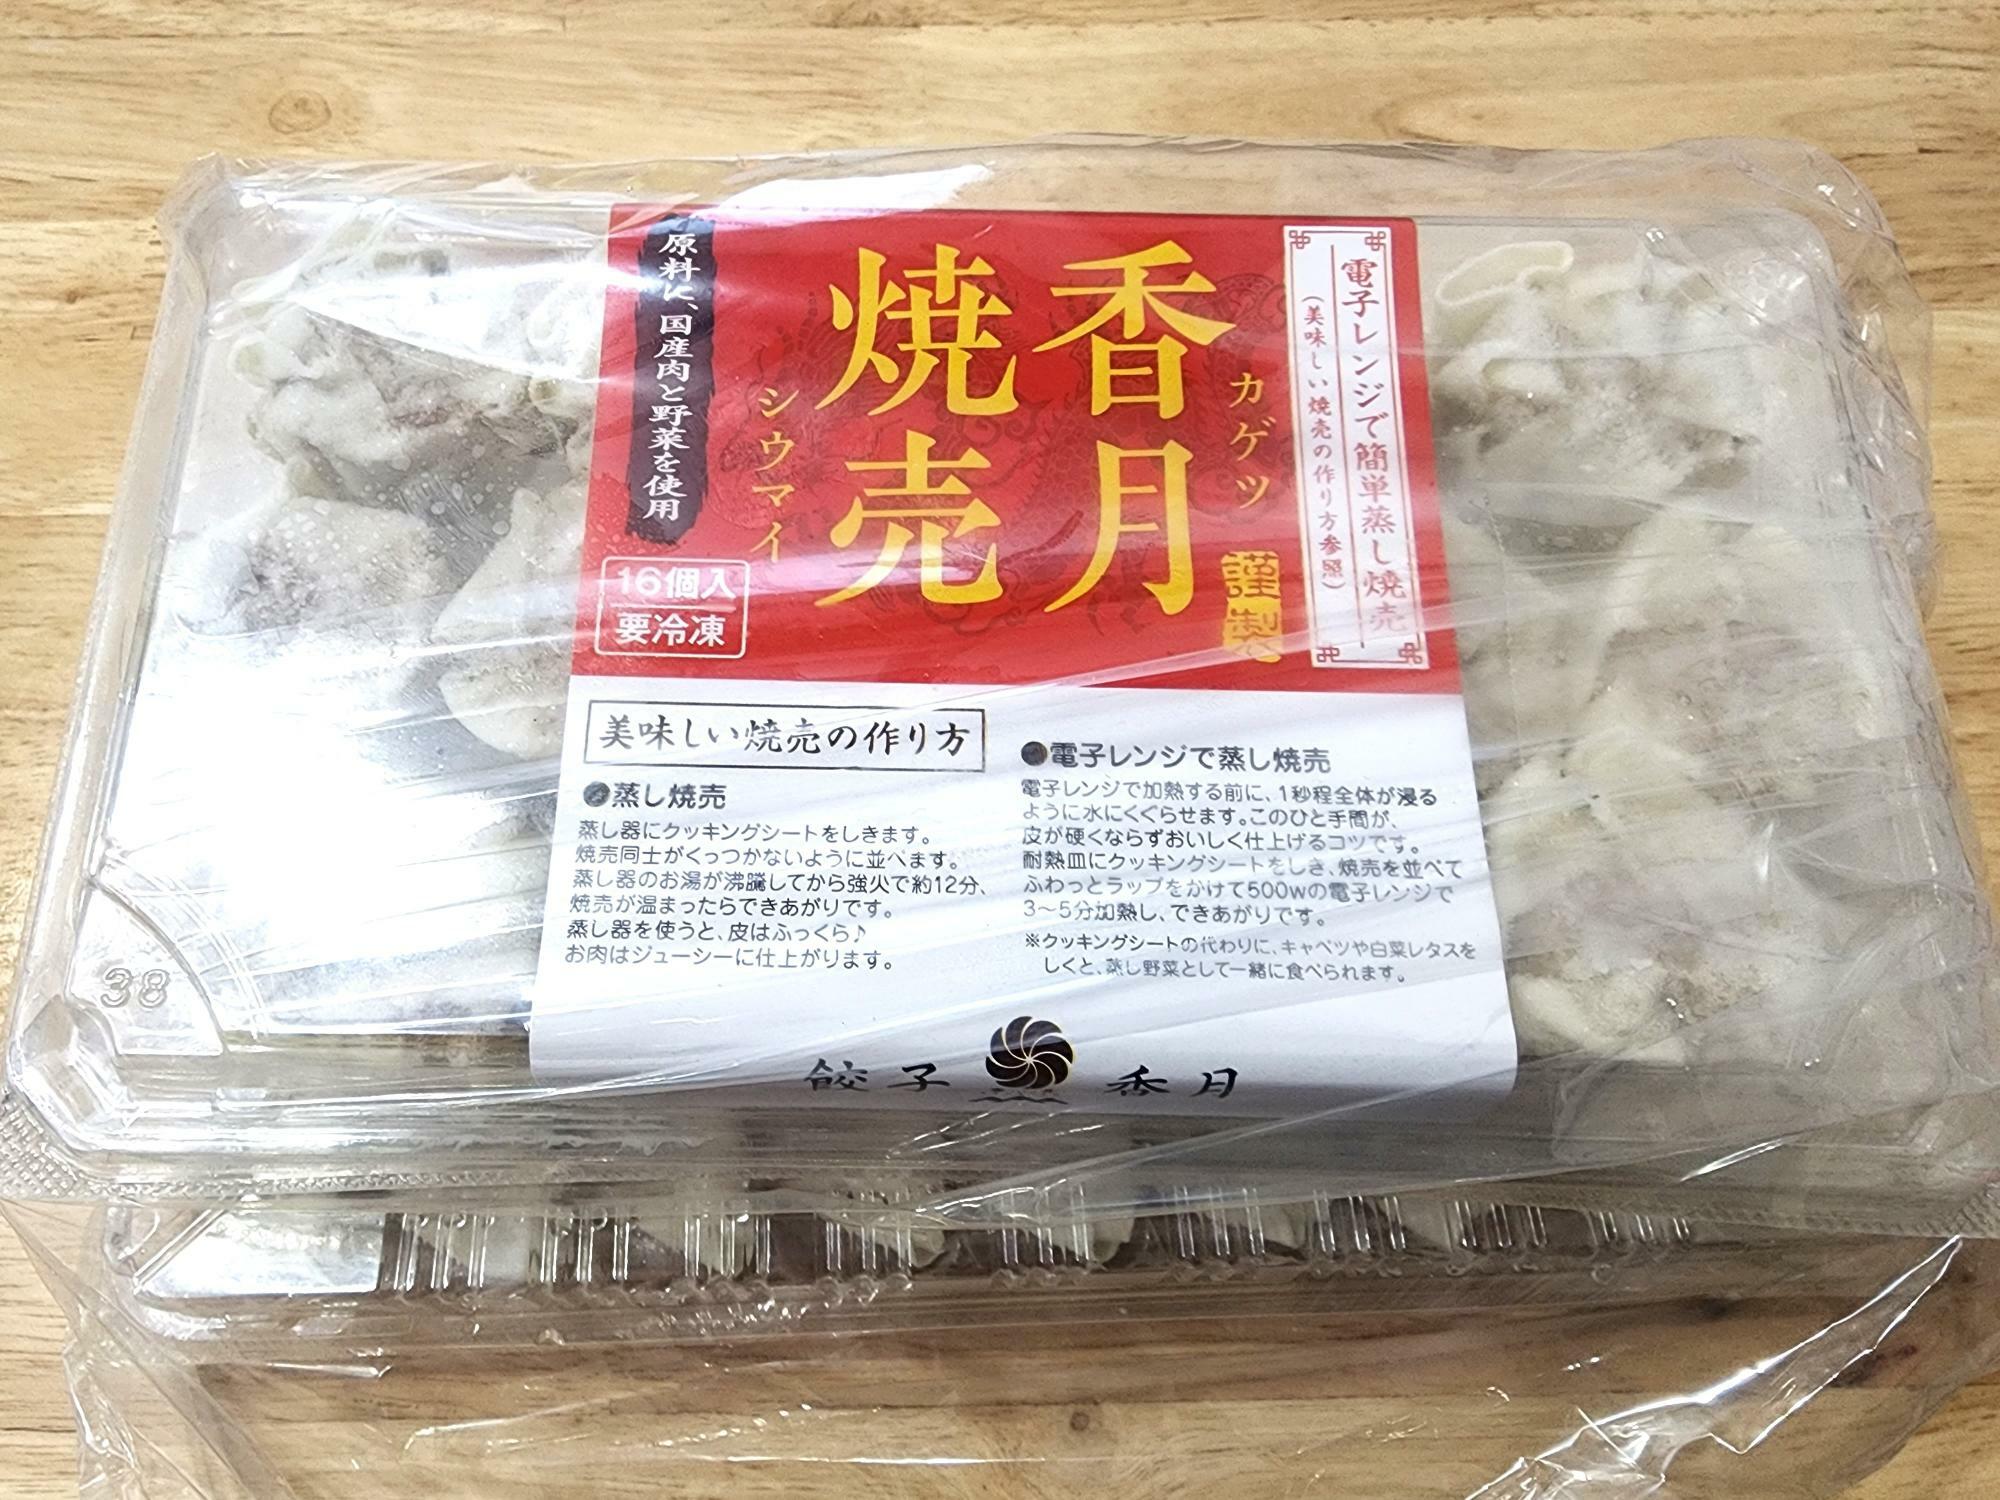 「餃子香月 国府府中店」で購入した「香月焼売＆うめ餃子」のセット。同梱の様子。